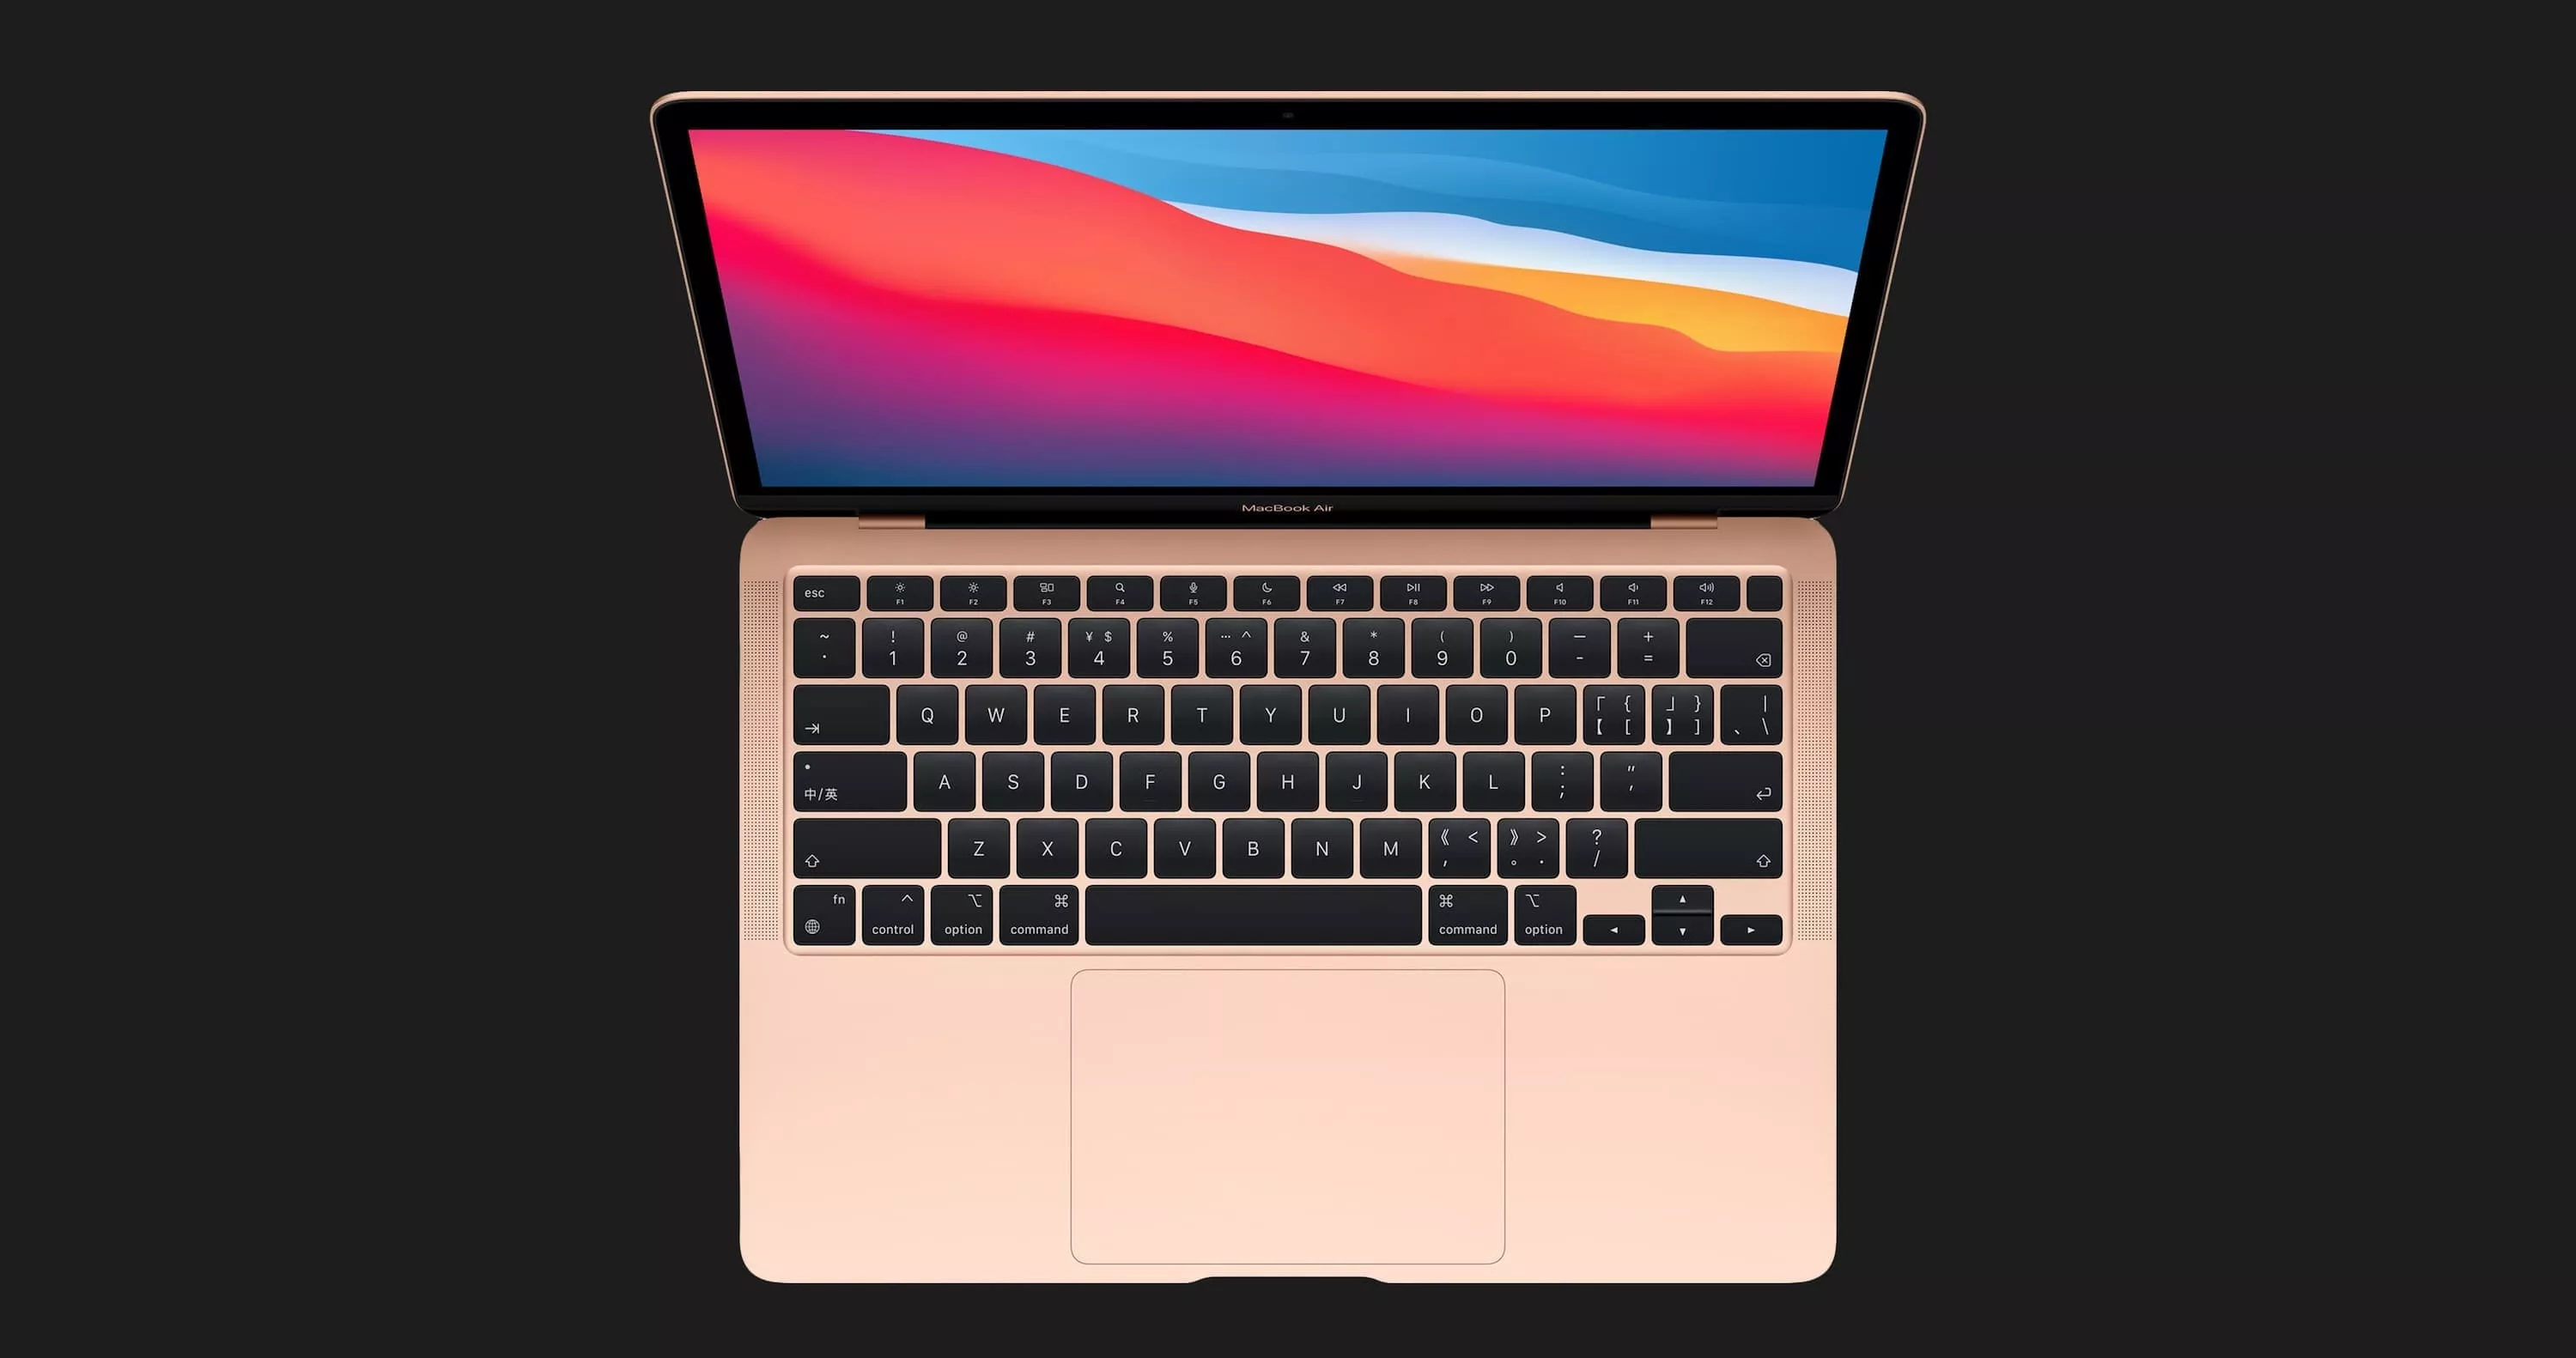 б/у Apple MacBook Air 13, 2020 (256GB) (Space Gray) (MWTJ2) (Відмінний стан)